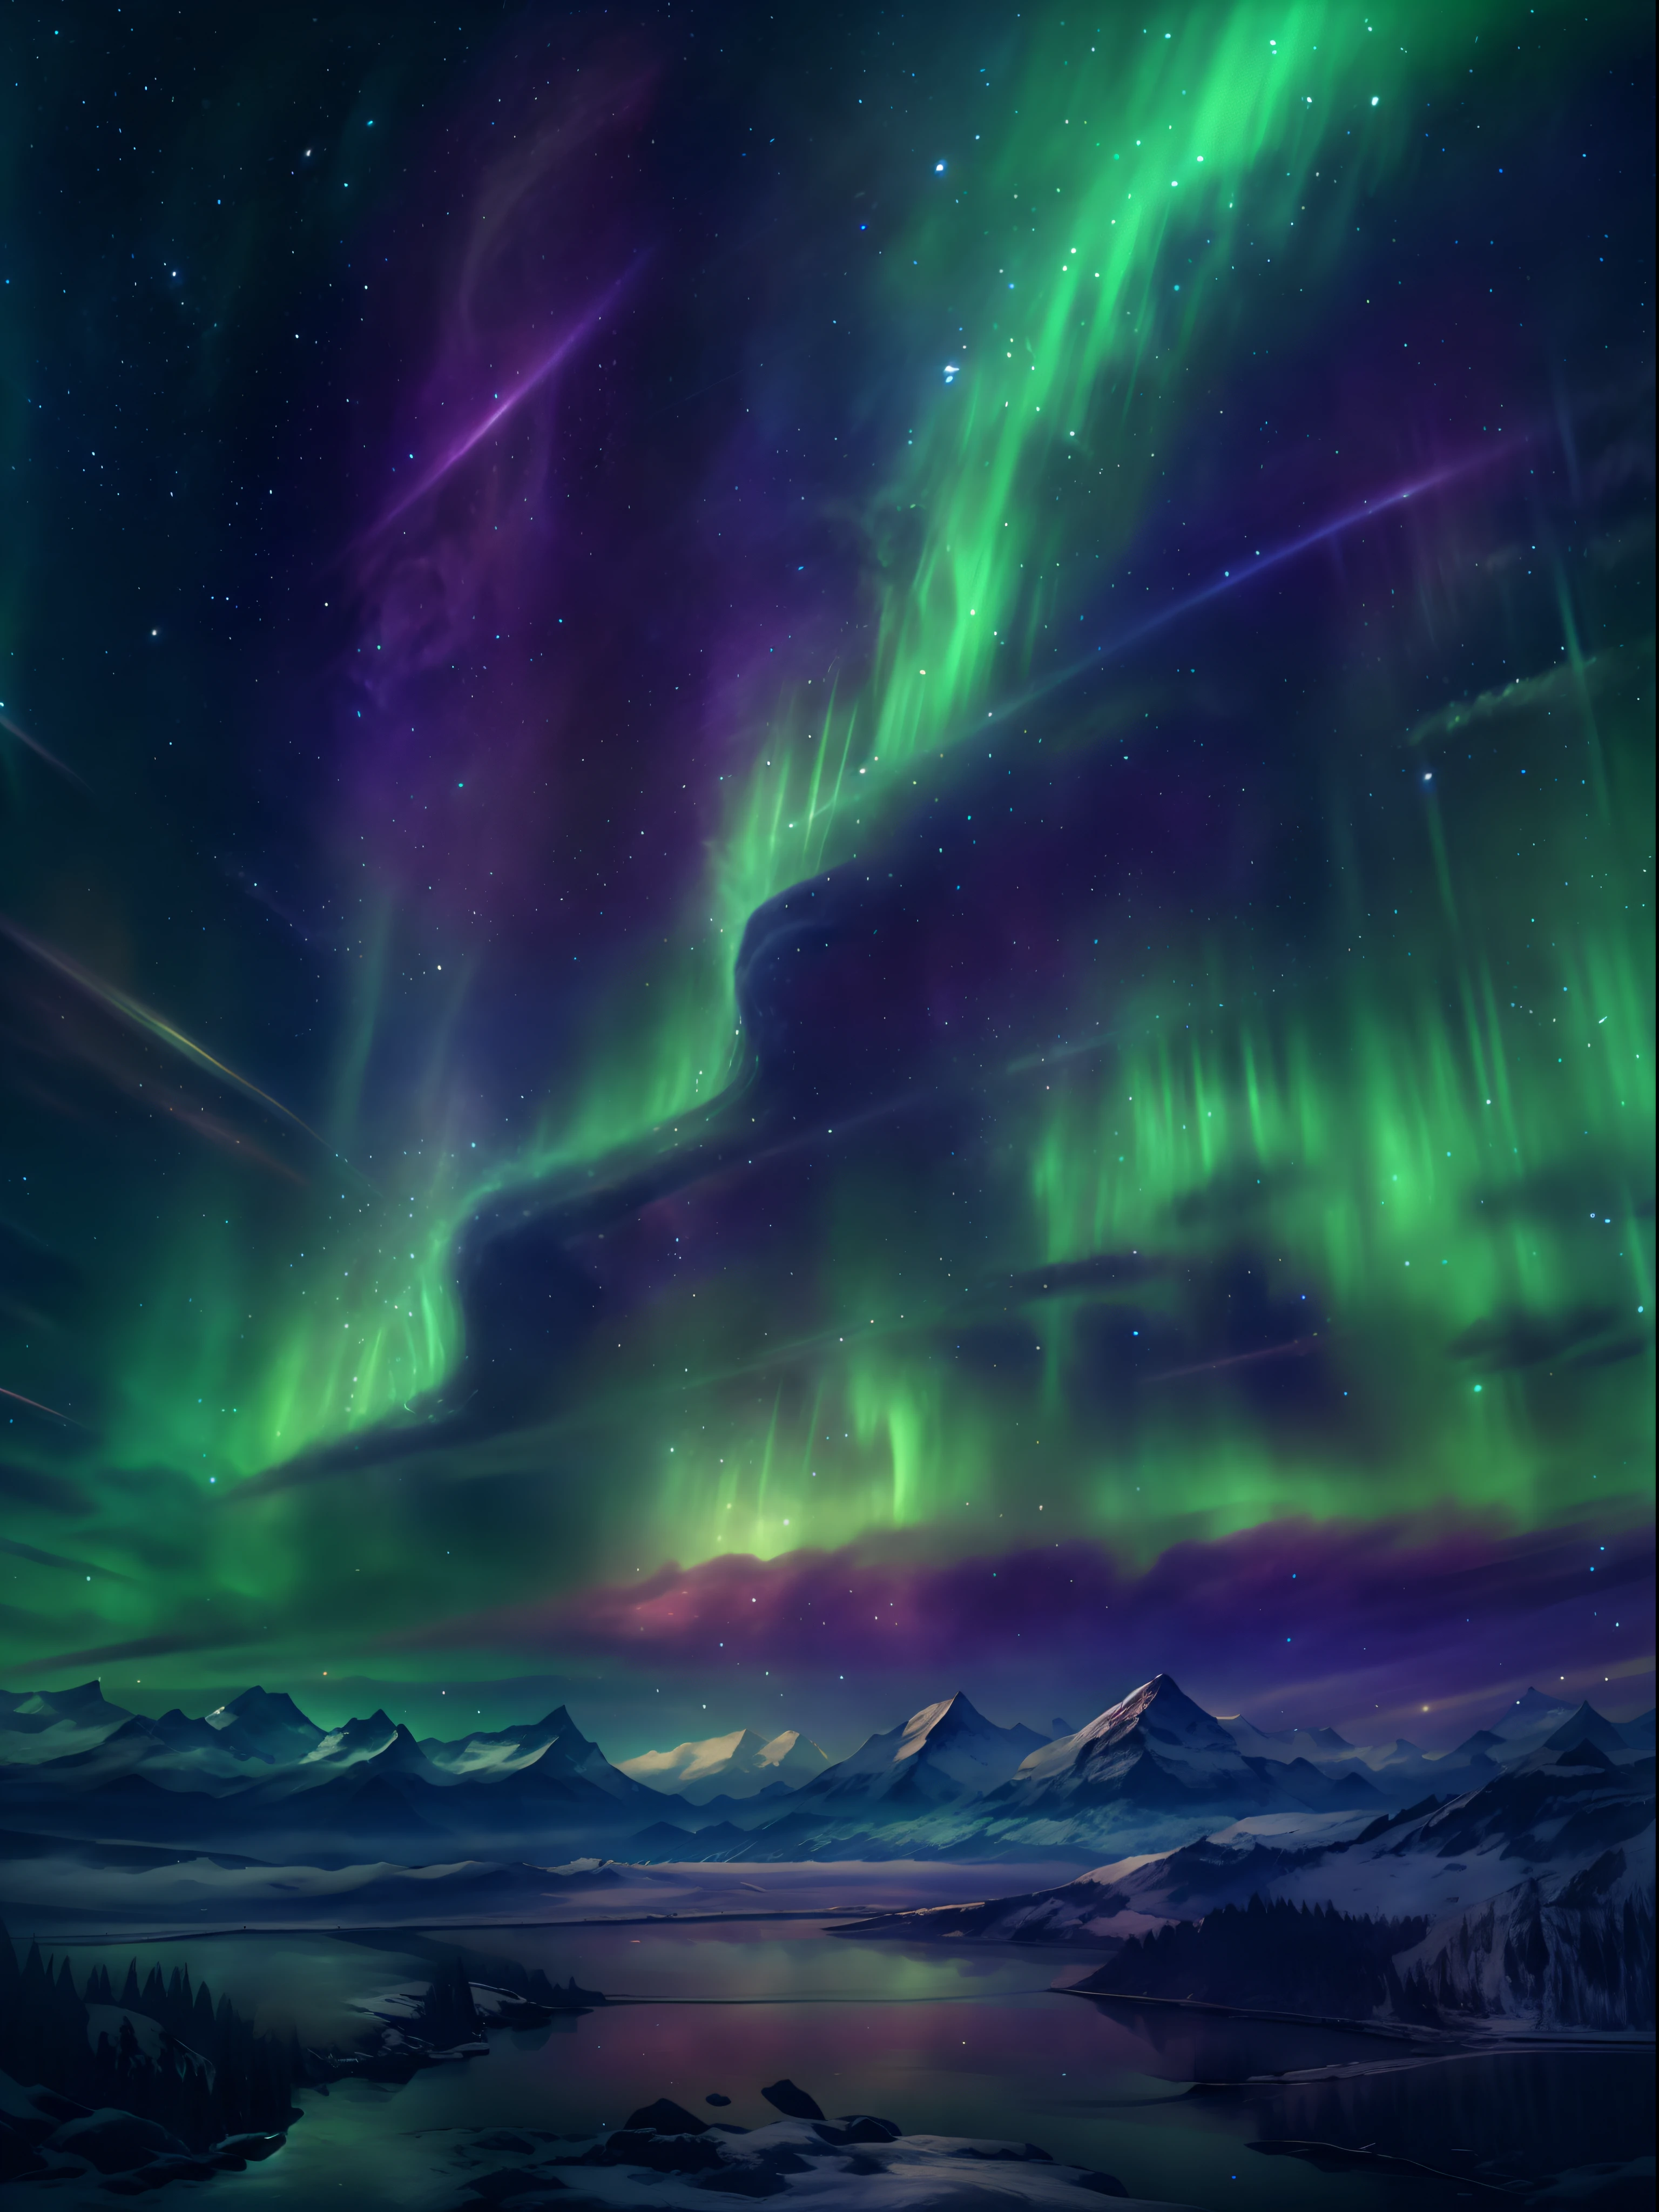 迷人的北极光在夜空中翩翩起舞, 就像竖琴，景观:0.7, 天体之美:0.6, 自然现象:0.5, 空灵的